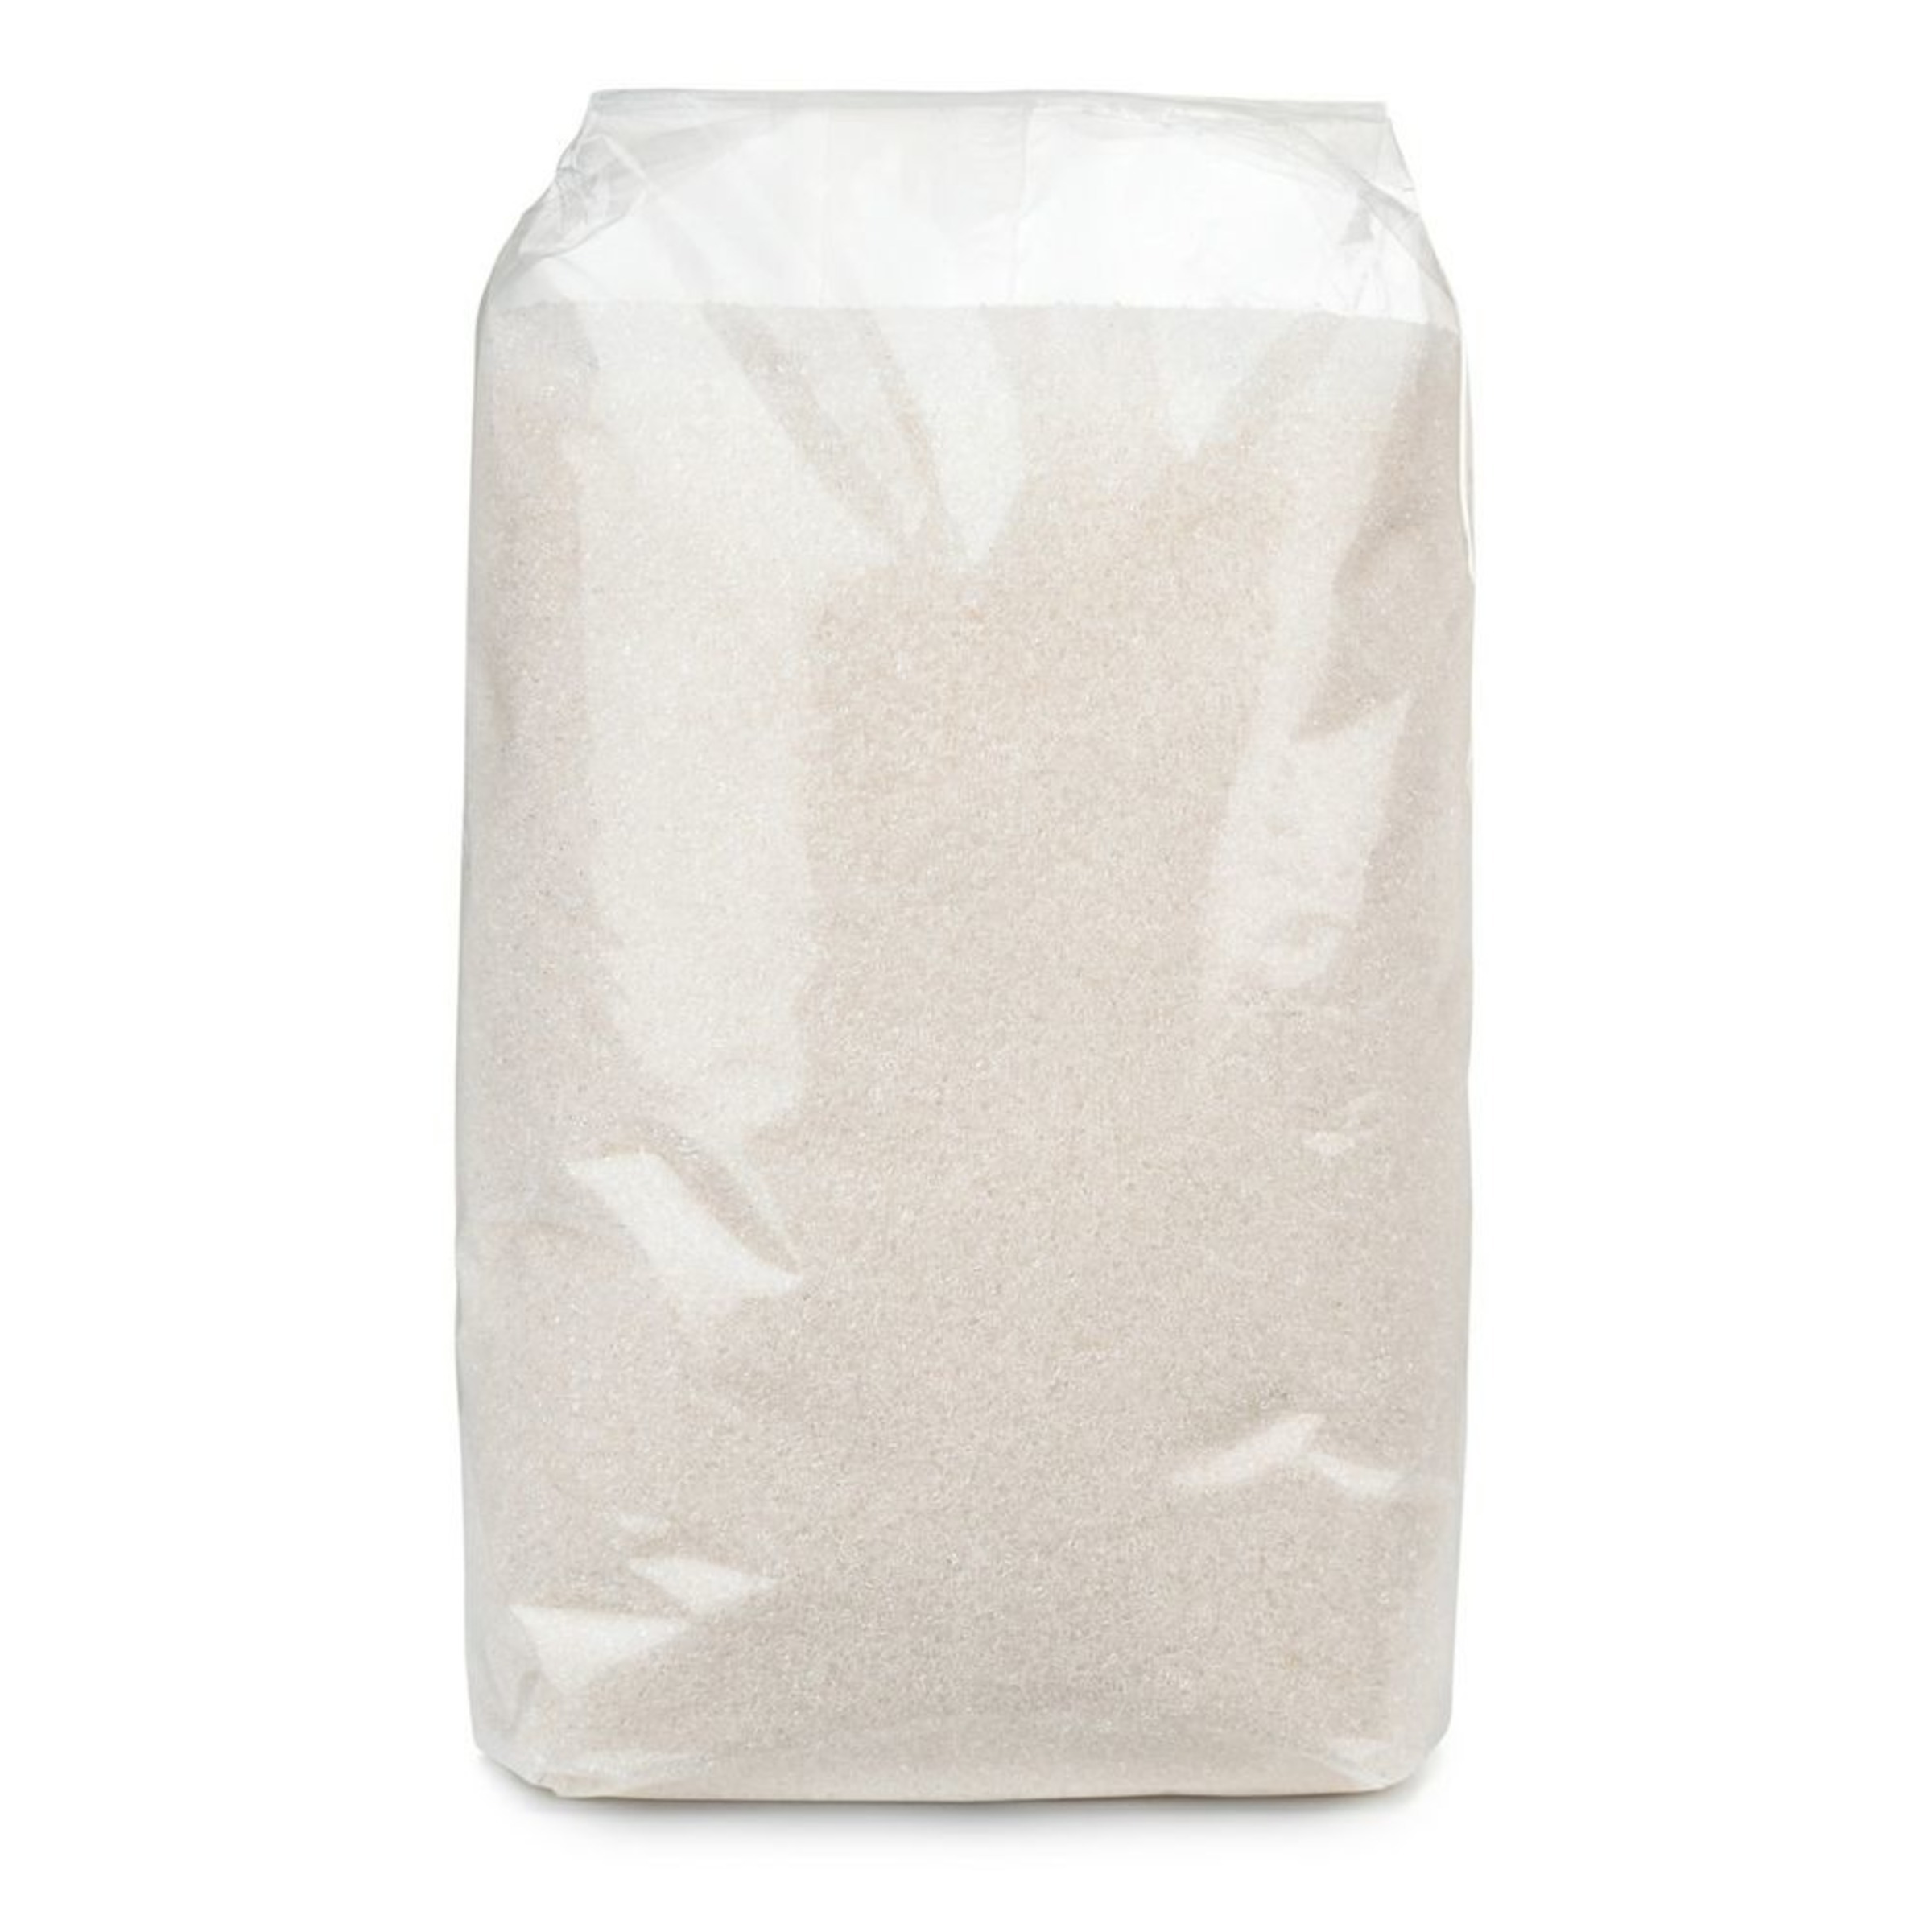 Сахар 1 кг. Сахар песок 1 кг. Сахар песок 900 гр.. Сахар песок Аксиома 900гр. Сахар песок (карат) 900гр.